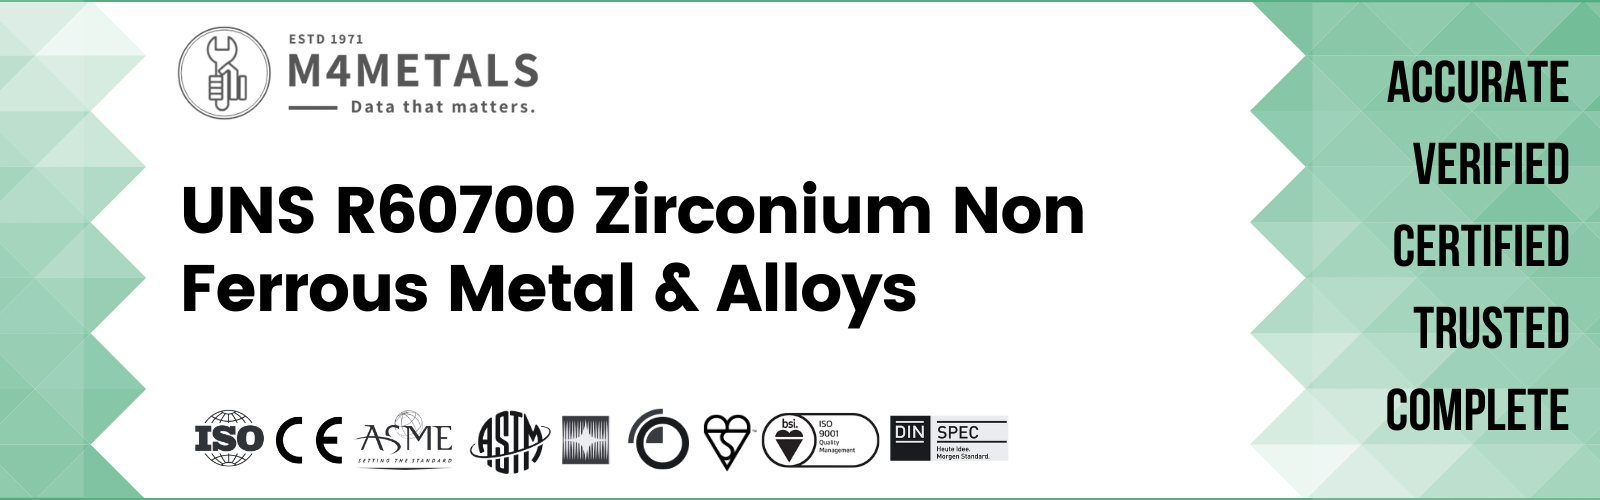 Zirconium UNS R60700